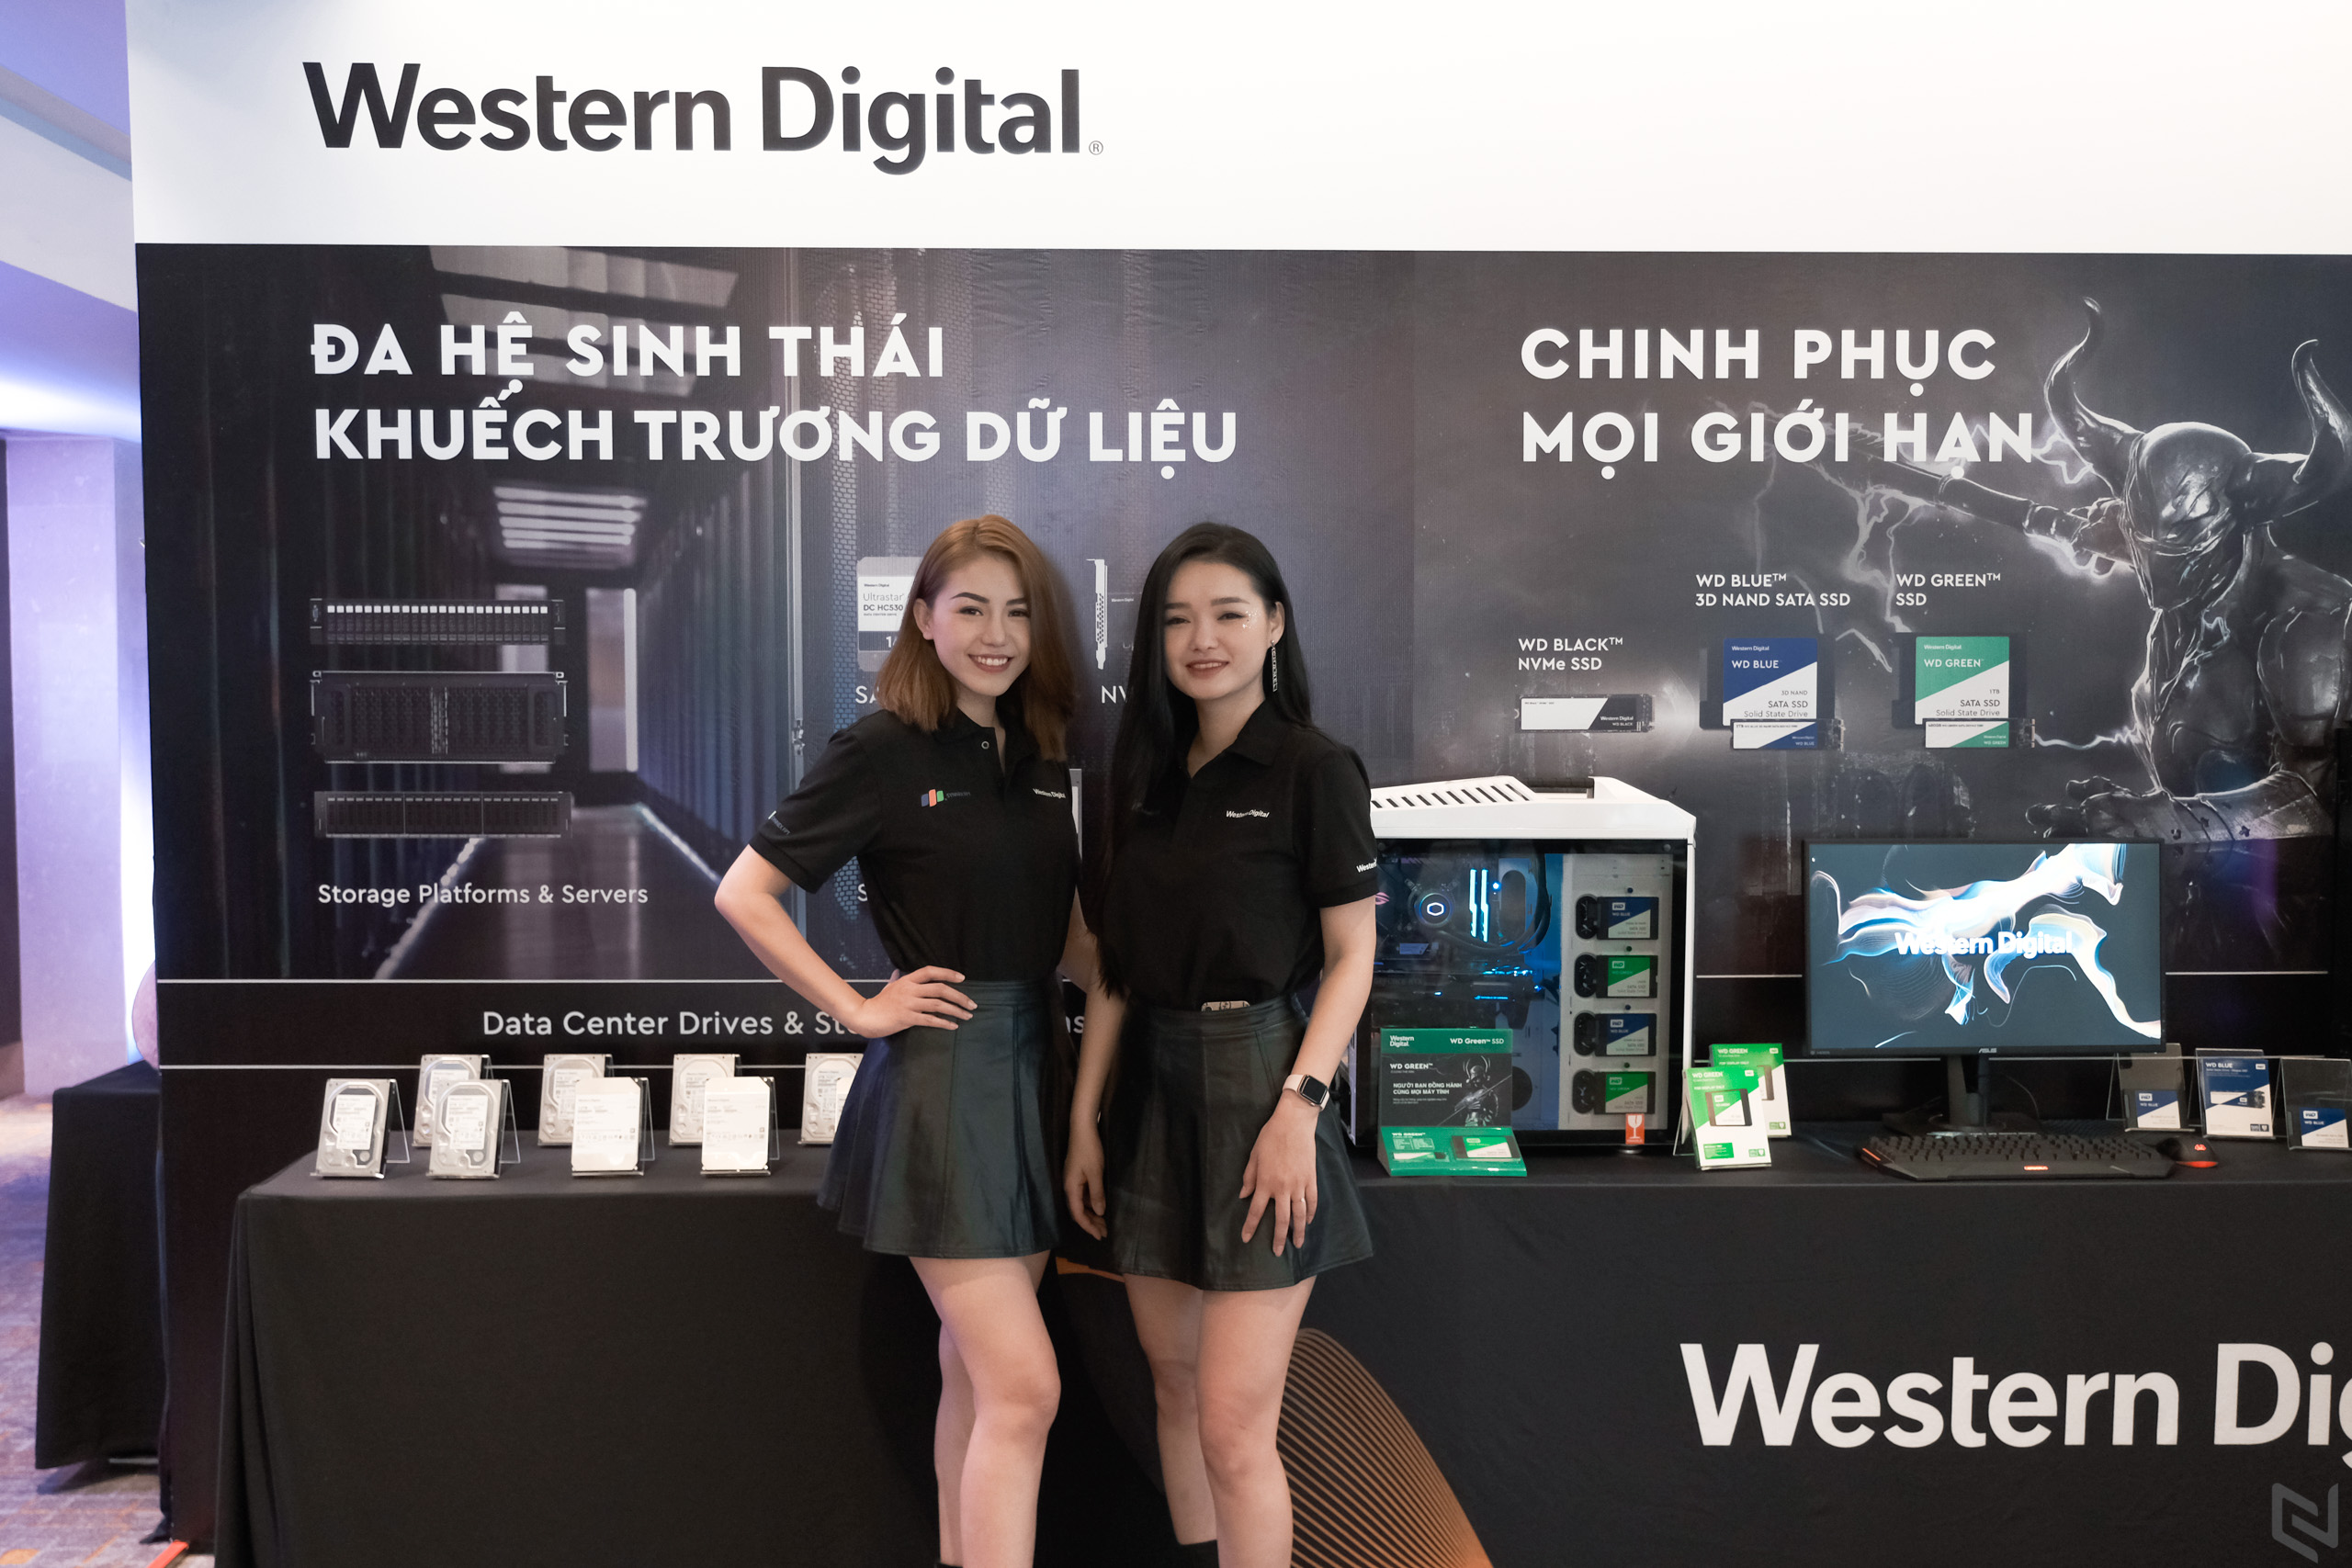 Synnex FPT trở thành nhà phân phối chính thức của Western Digital tại Việt Nam